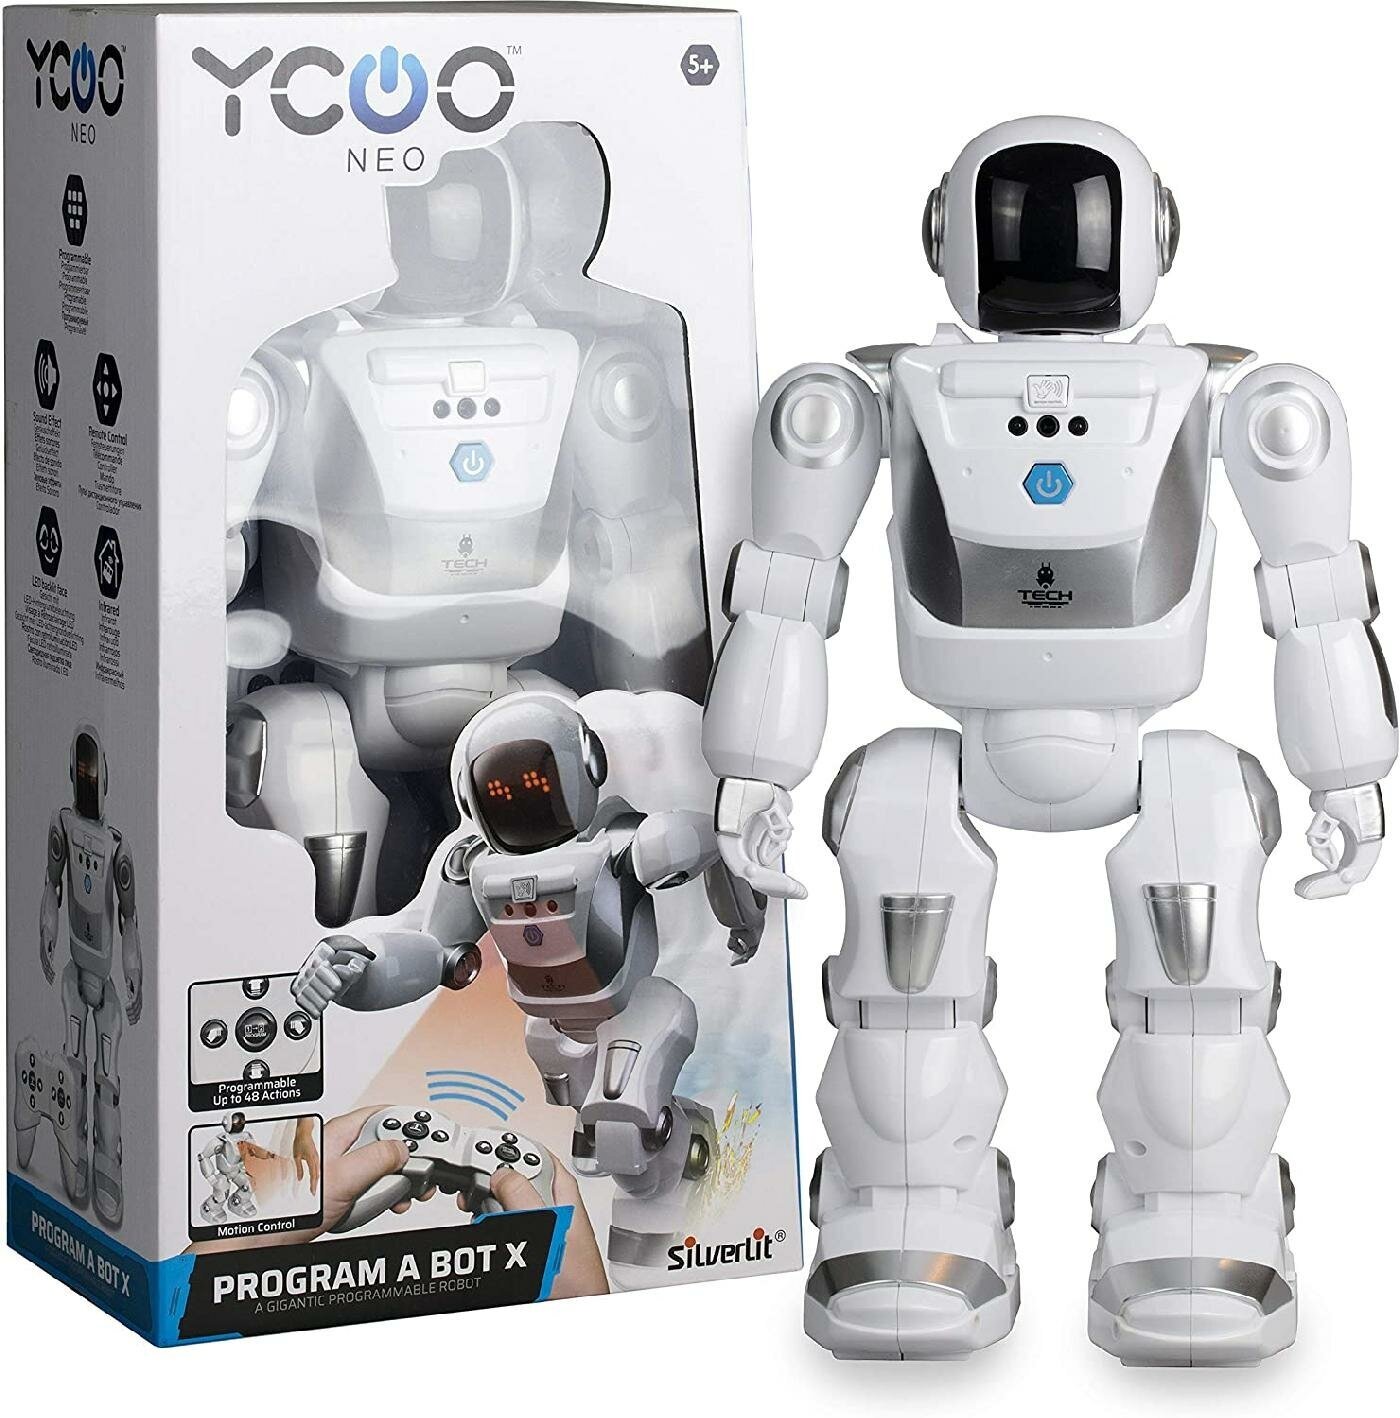 Робот Ycoo программируемый Х - фото №4